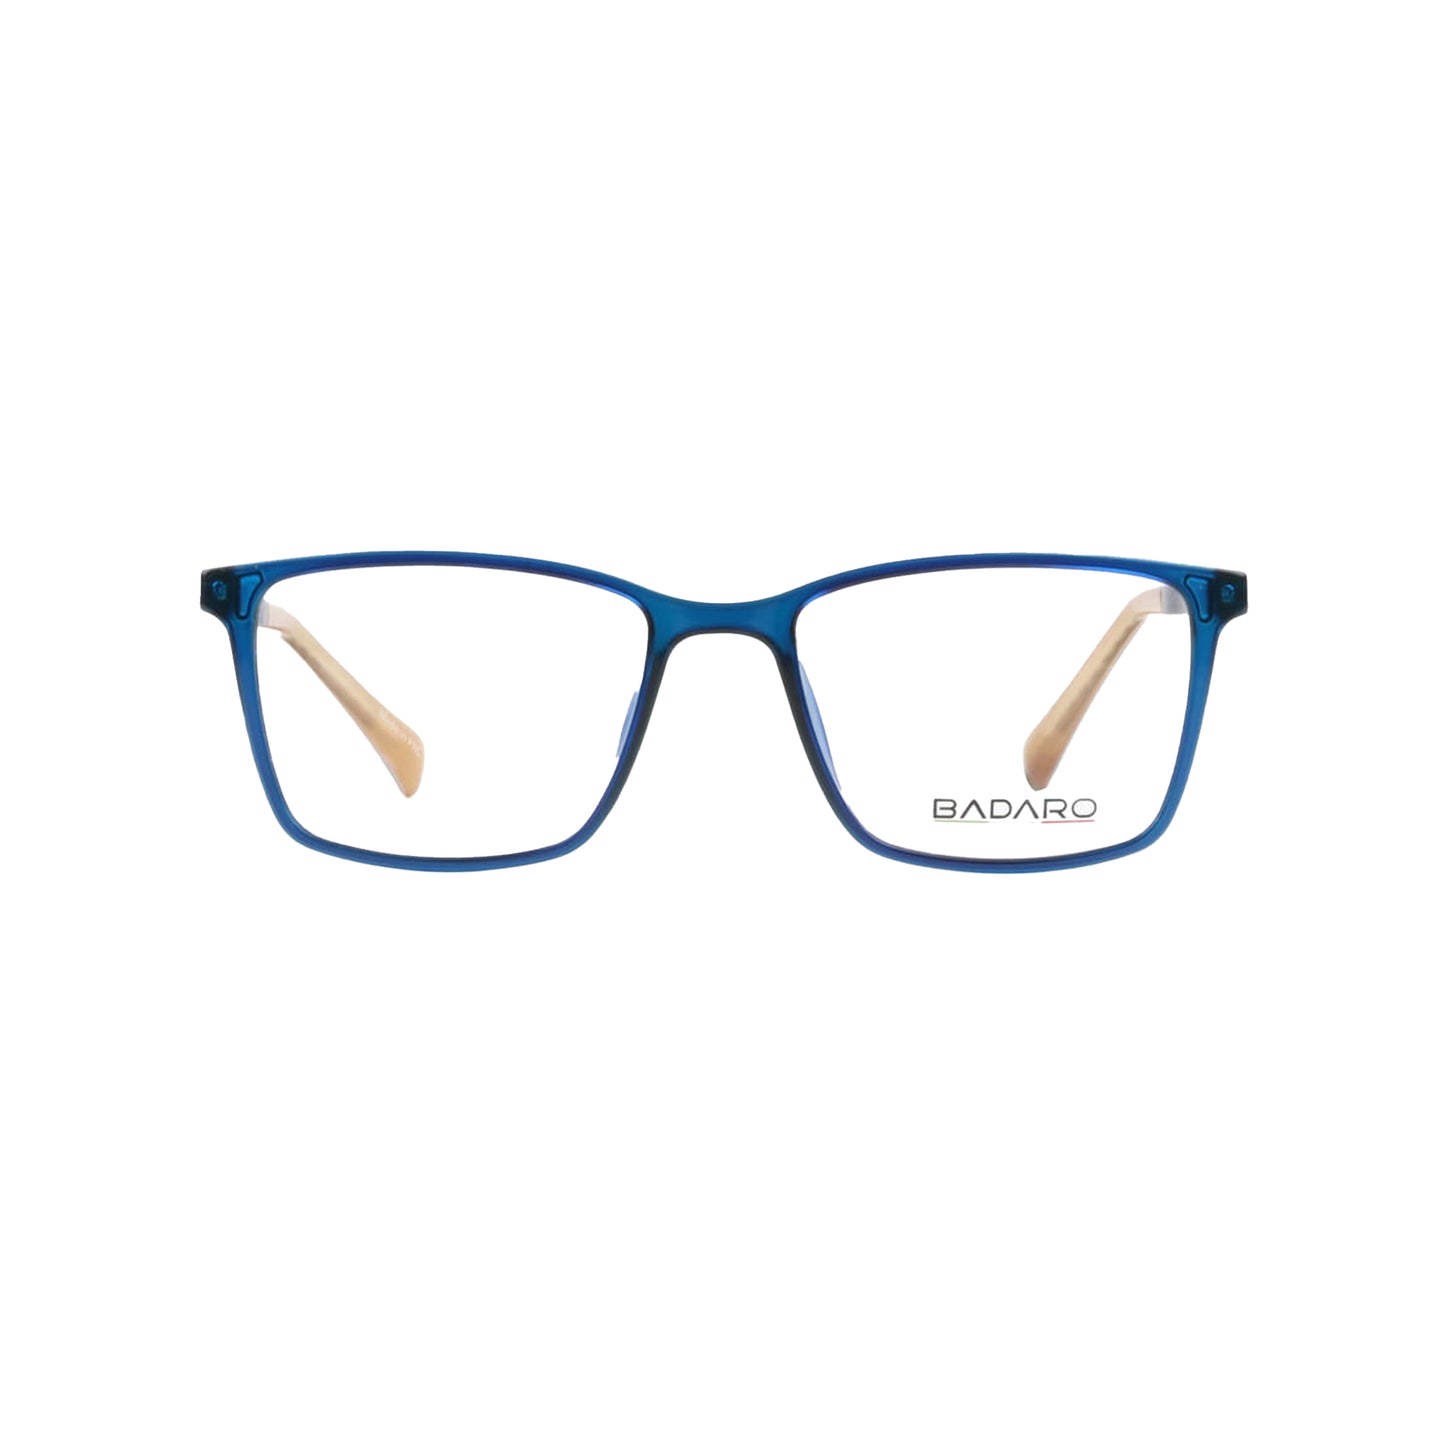 Badaro Blue Square Acetate Full Rim Eyeglasses